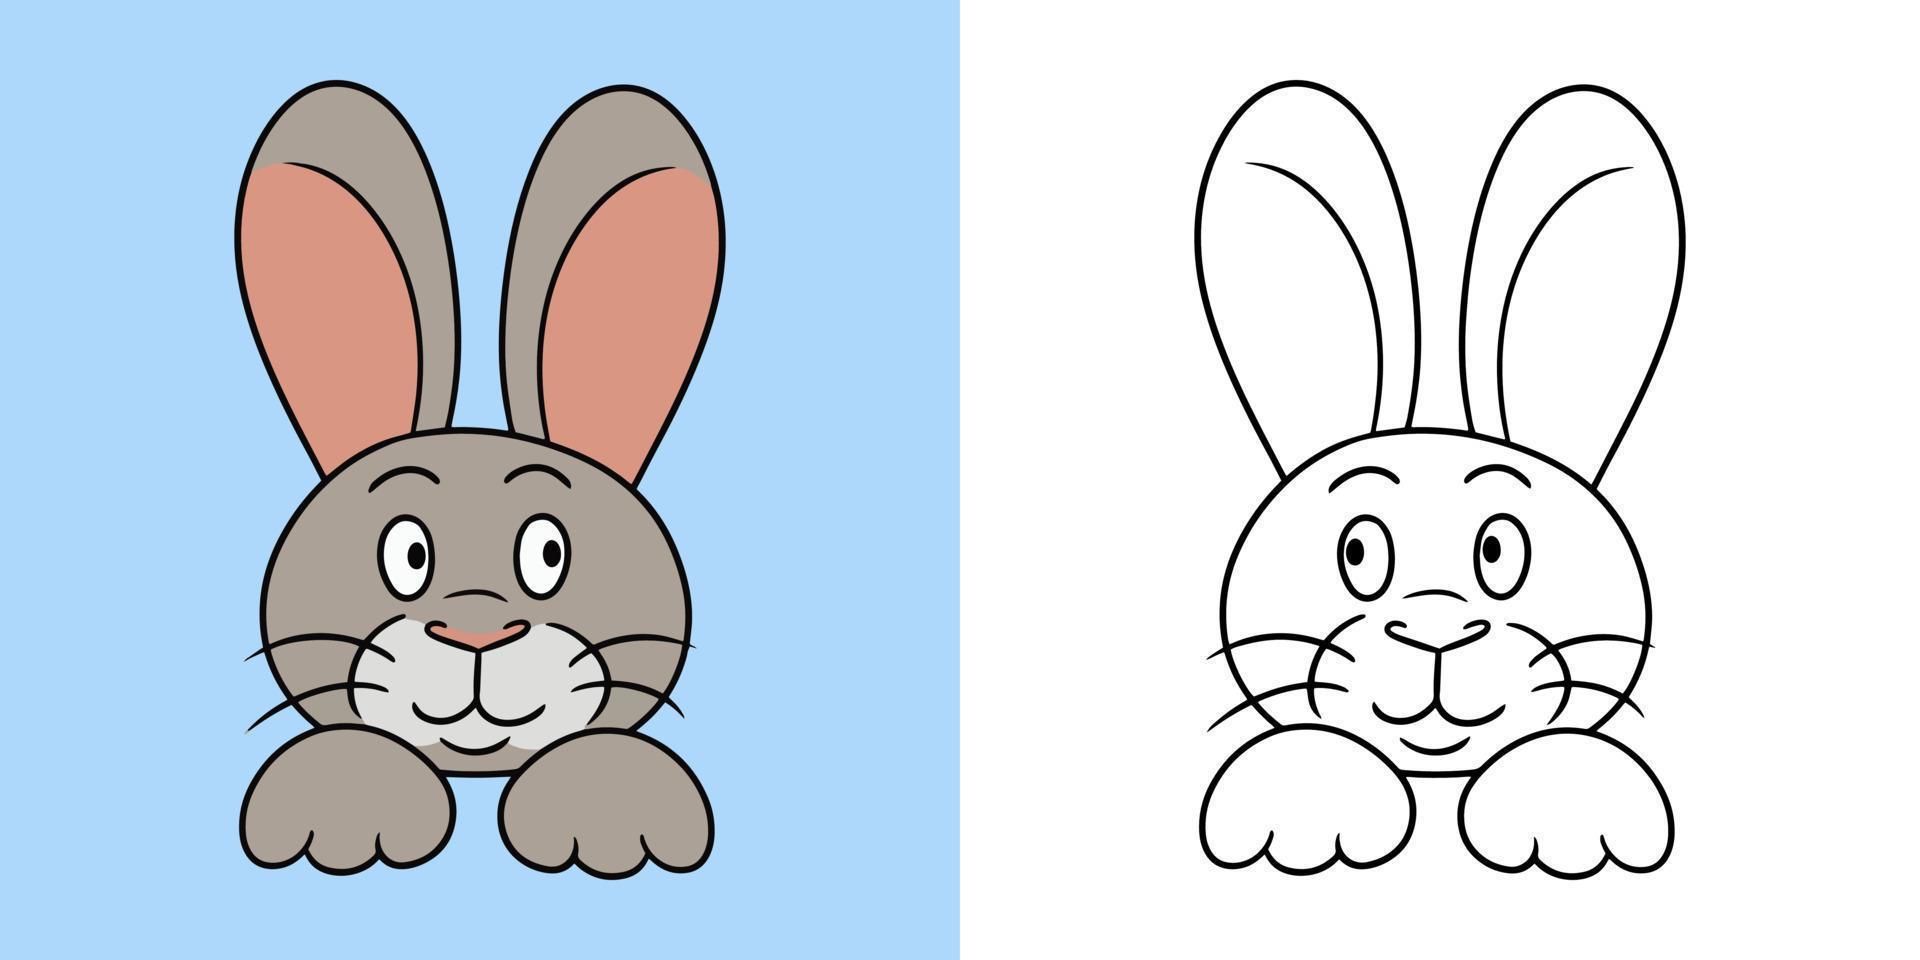 ensemble d'images horizontales, lapin mignon drôle, souriant, illustration vectorielle en style dessin animé pour livre de coloriage vecteur